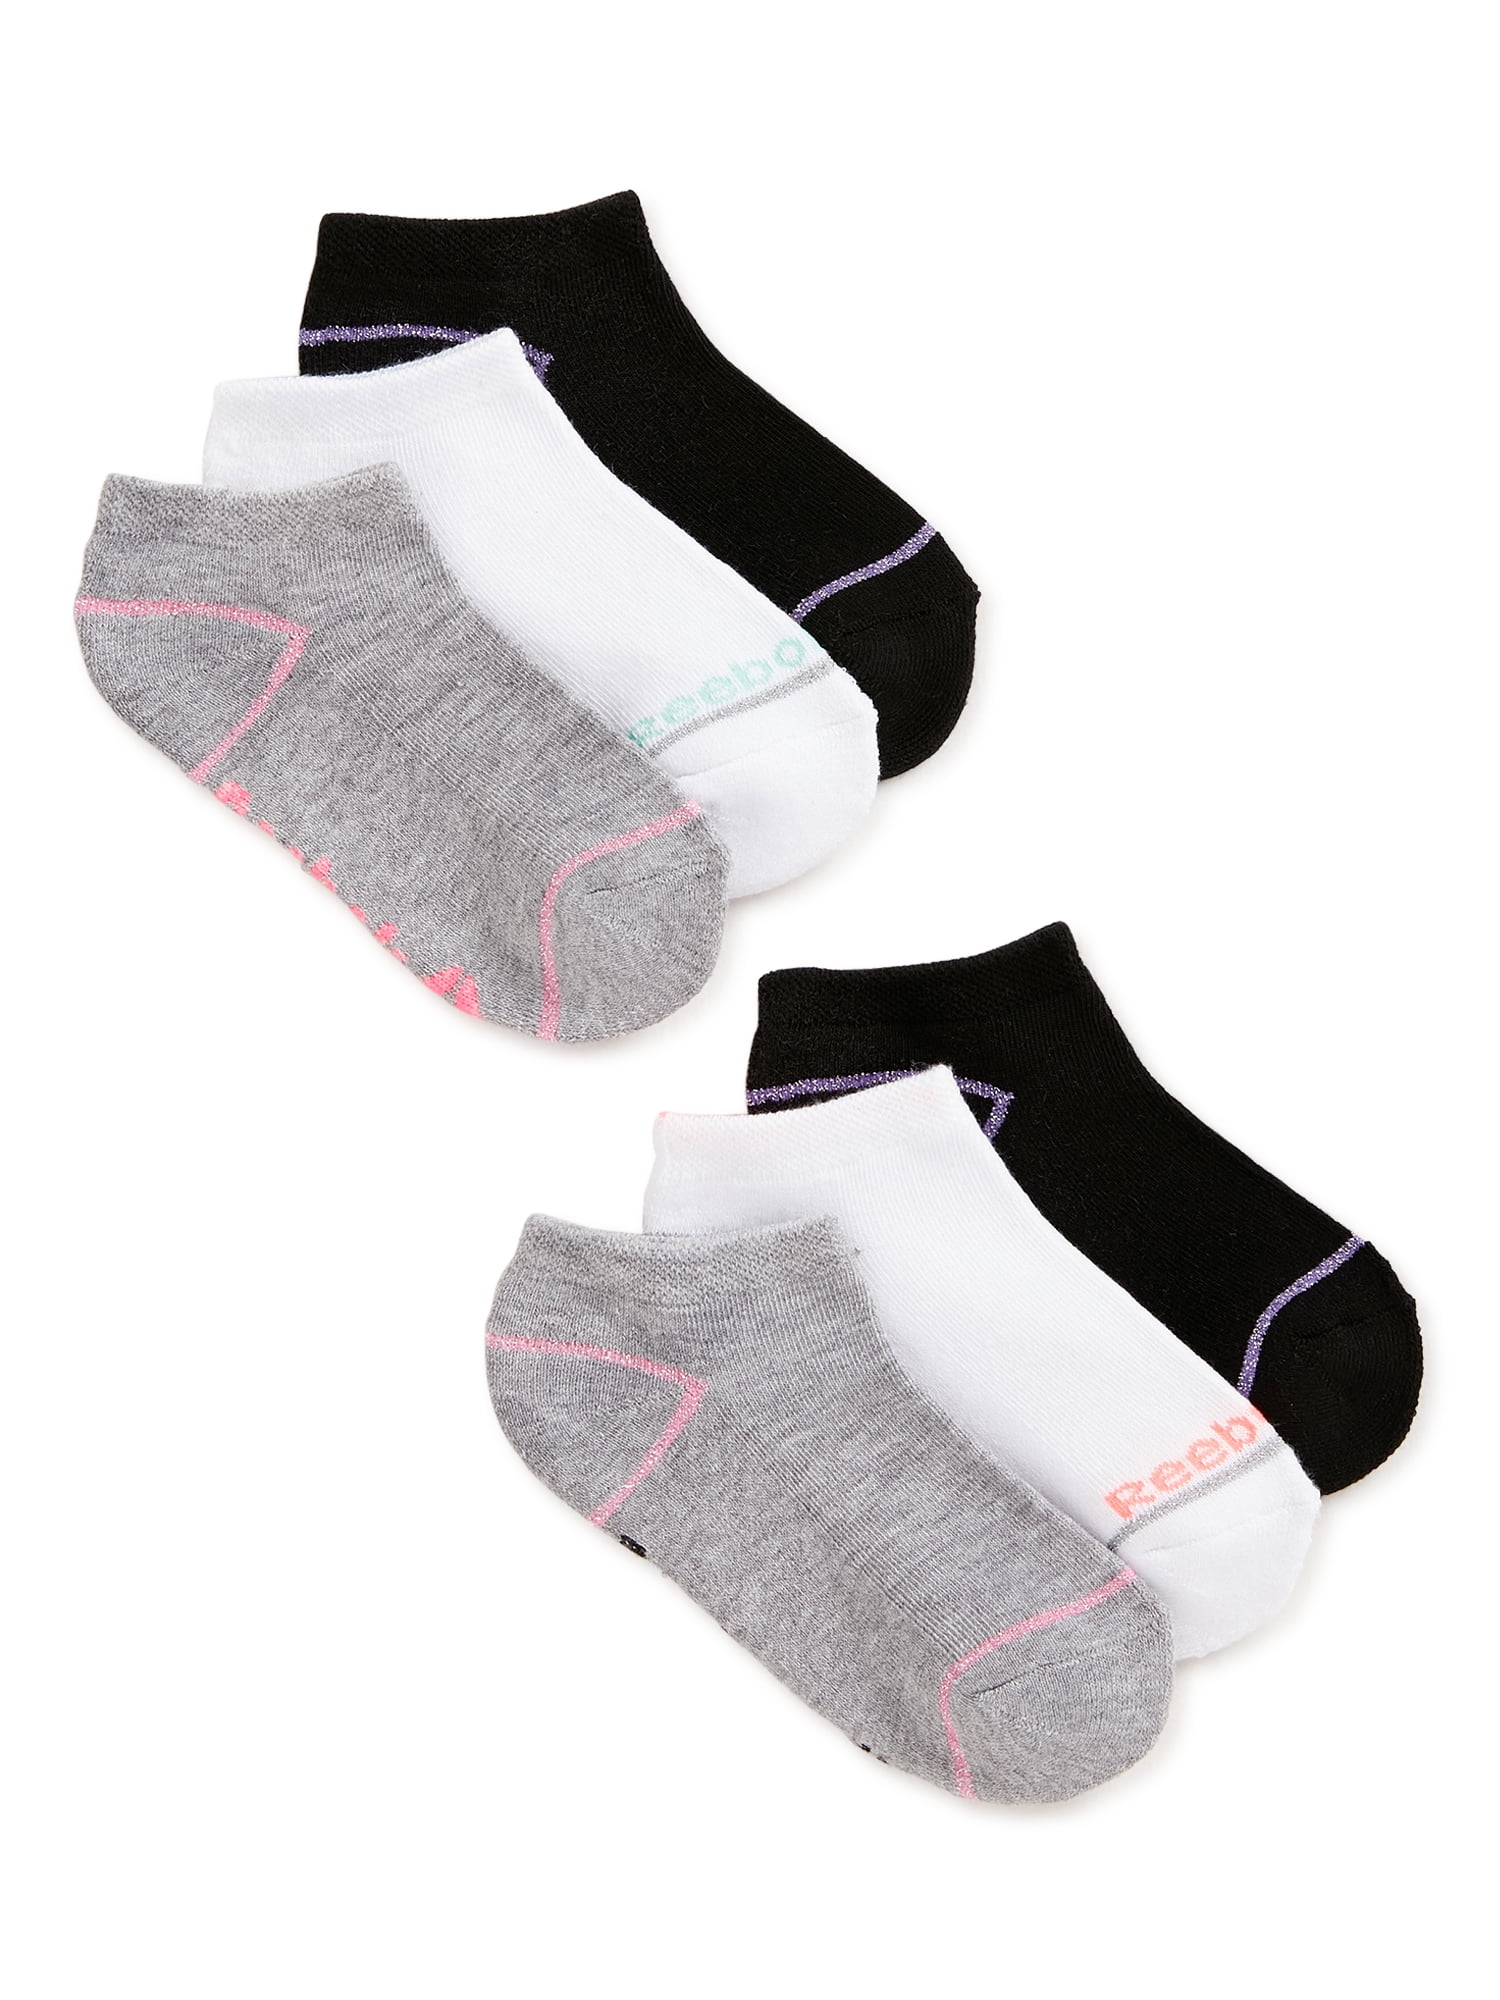 Reebok Girls Lowcut Socks 6-Pack, Sizes S-L - Walmart.com